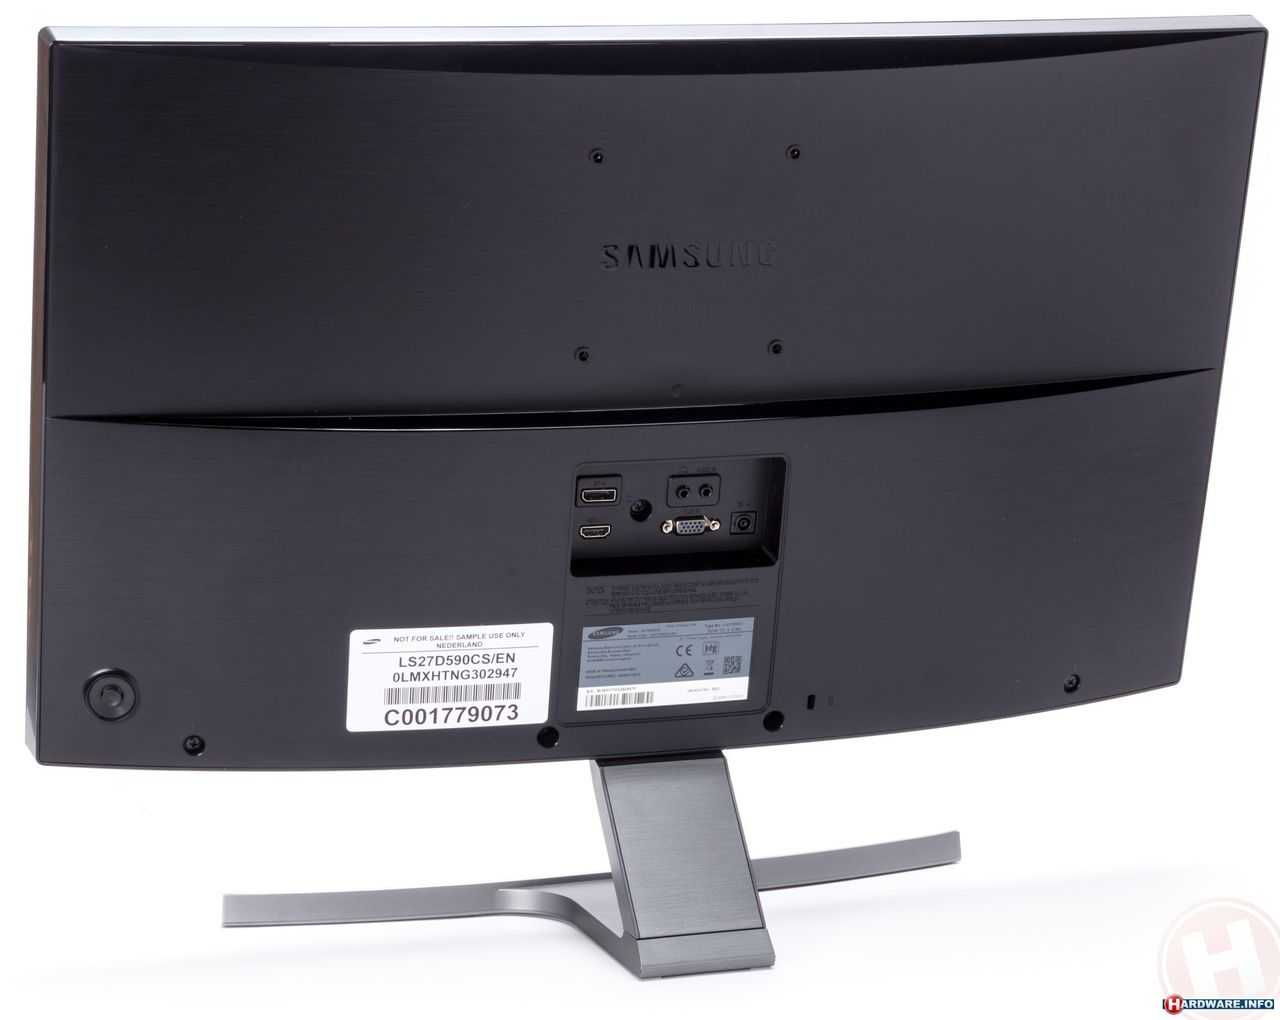 Samsung t27d590ex - купить , скидки, цена, отзывы, обзор, характеристики - телевизоры